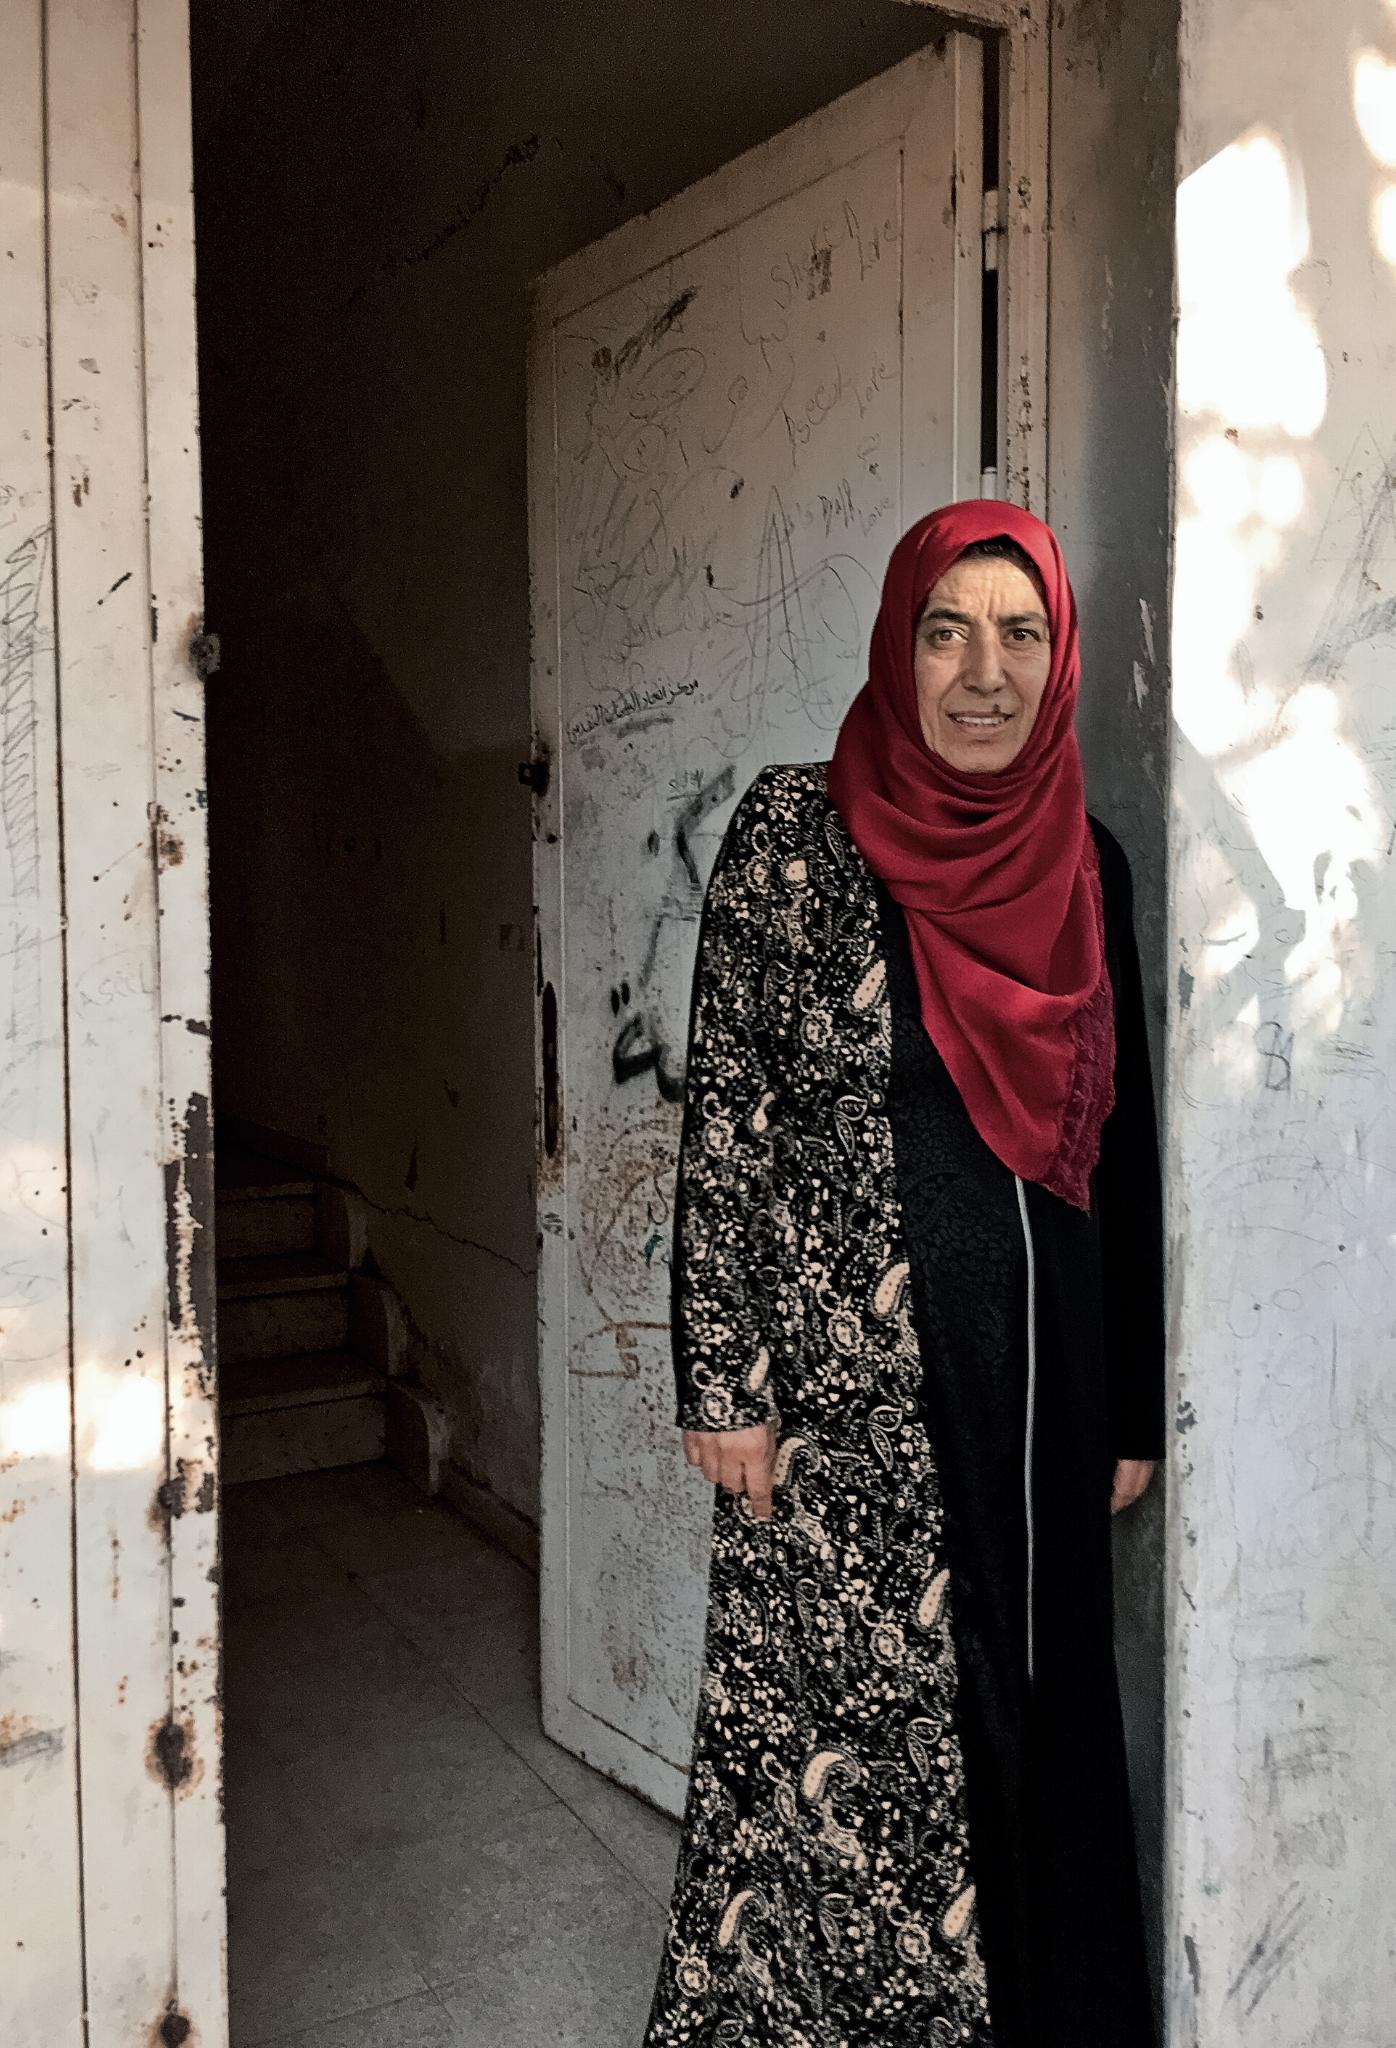  Basma Abu Gelmin. Stworzyła miejsca pracy dla kobiet z Beit Furik, niedawno kandydowała też do lokalnego samorządu. (Fot. Katarzyna Boni)